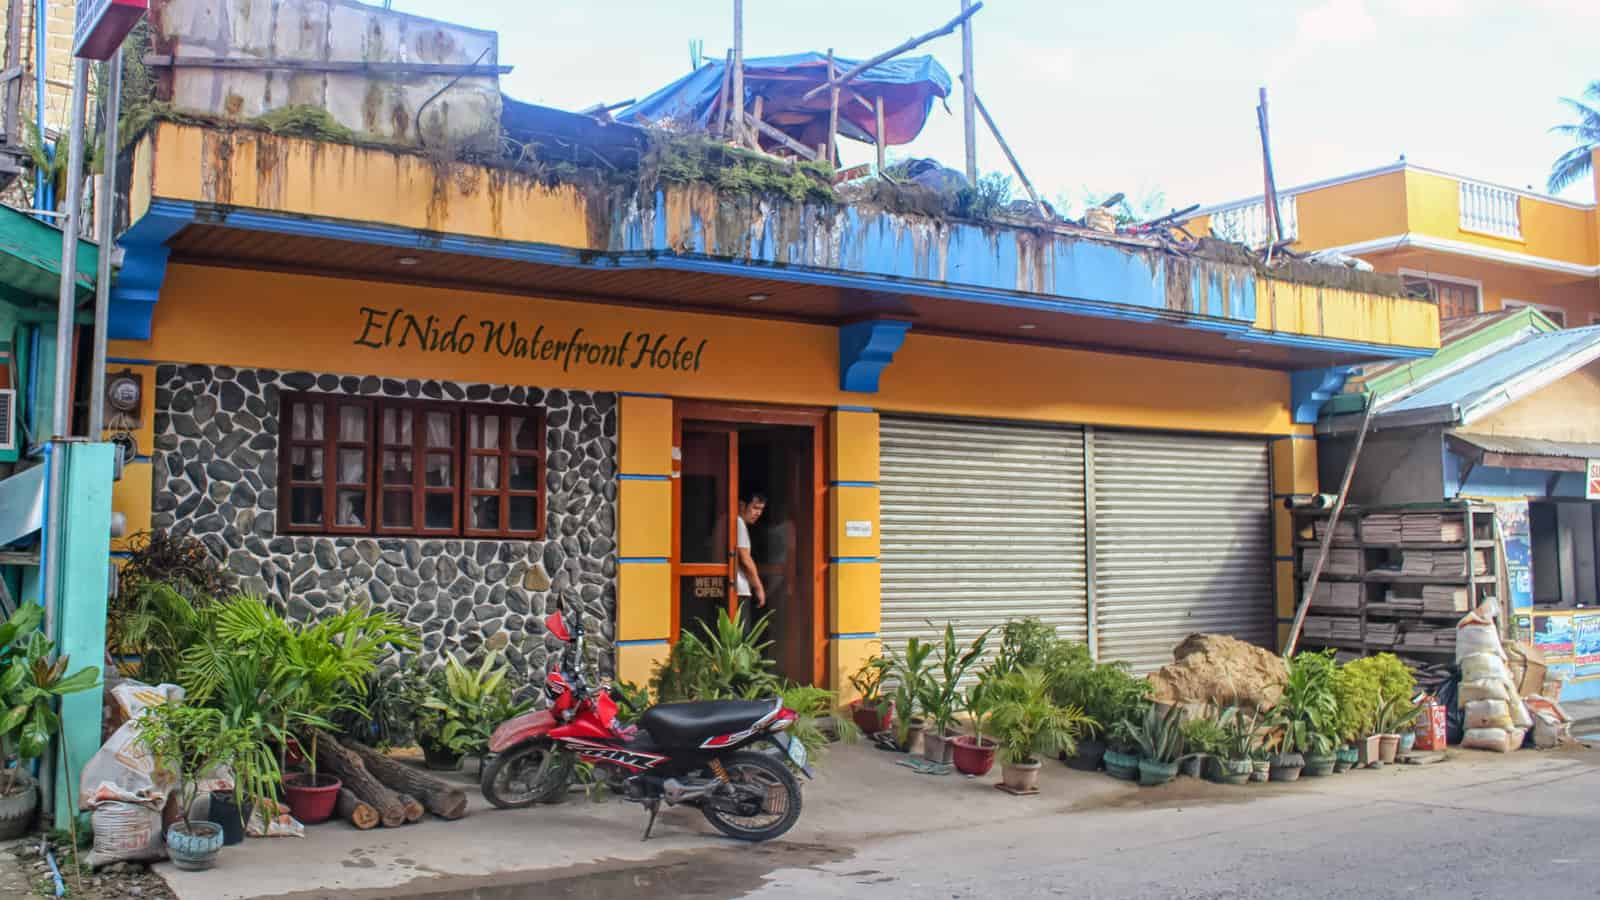 El Nido Waterfront Hotel, Palawan